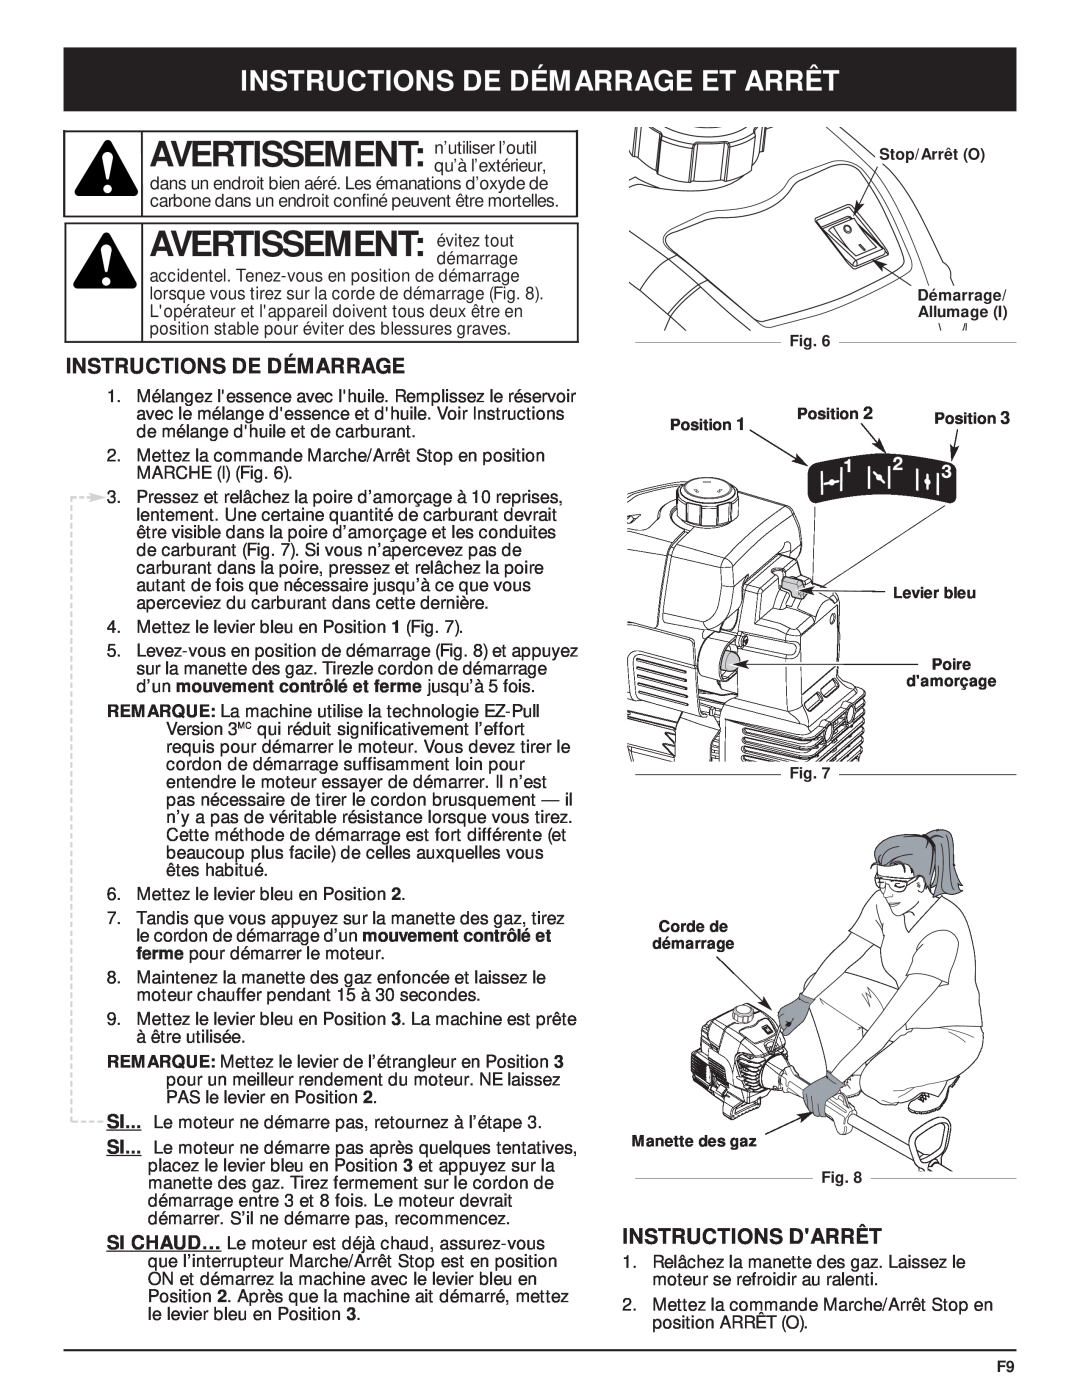 MTD MT700 manual AVERTISSEMENT évitez tout, Instructions De Démarrage Et Arrêt, Instructions Darrêt 